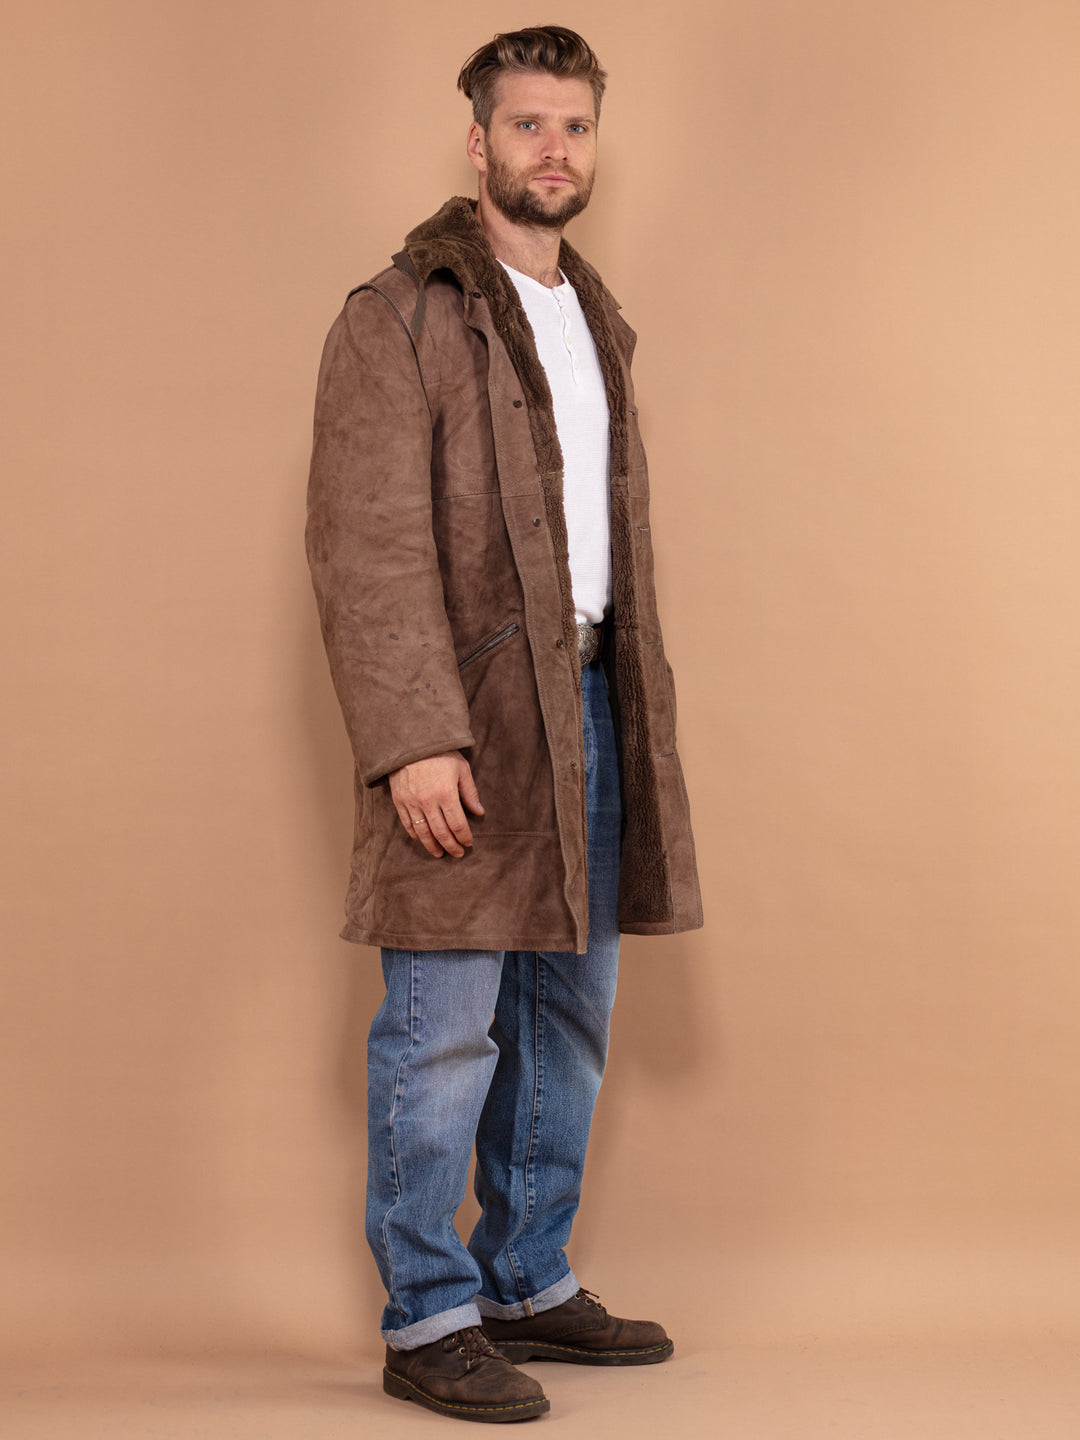 Men Sheepskin Coat, Size Large L, Shearling Coat Men, 70s Vintage Coat, Winter Clothing, Brown Suede Coat, Vintage Overcoat, Made in France